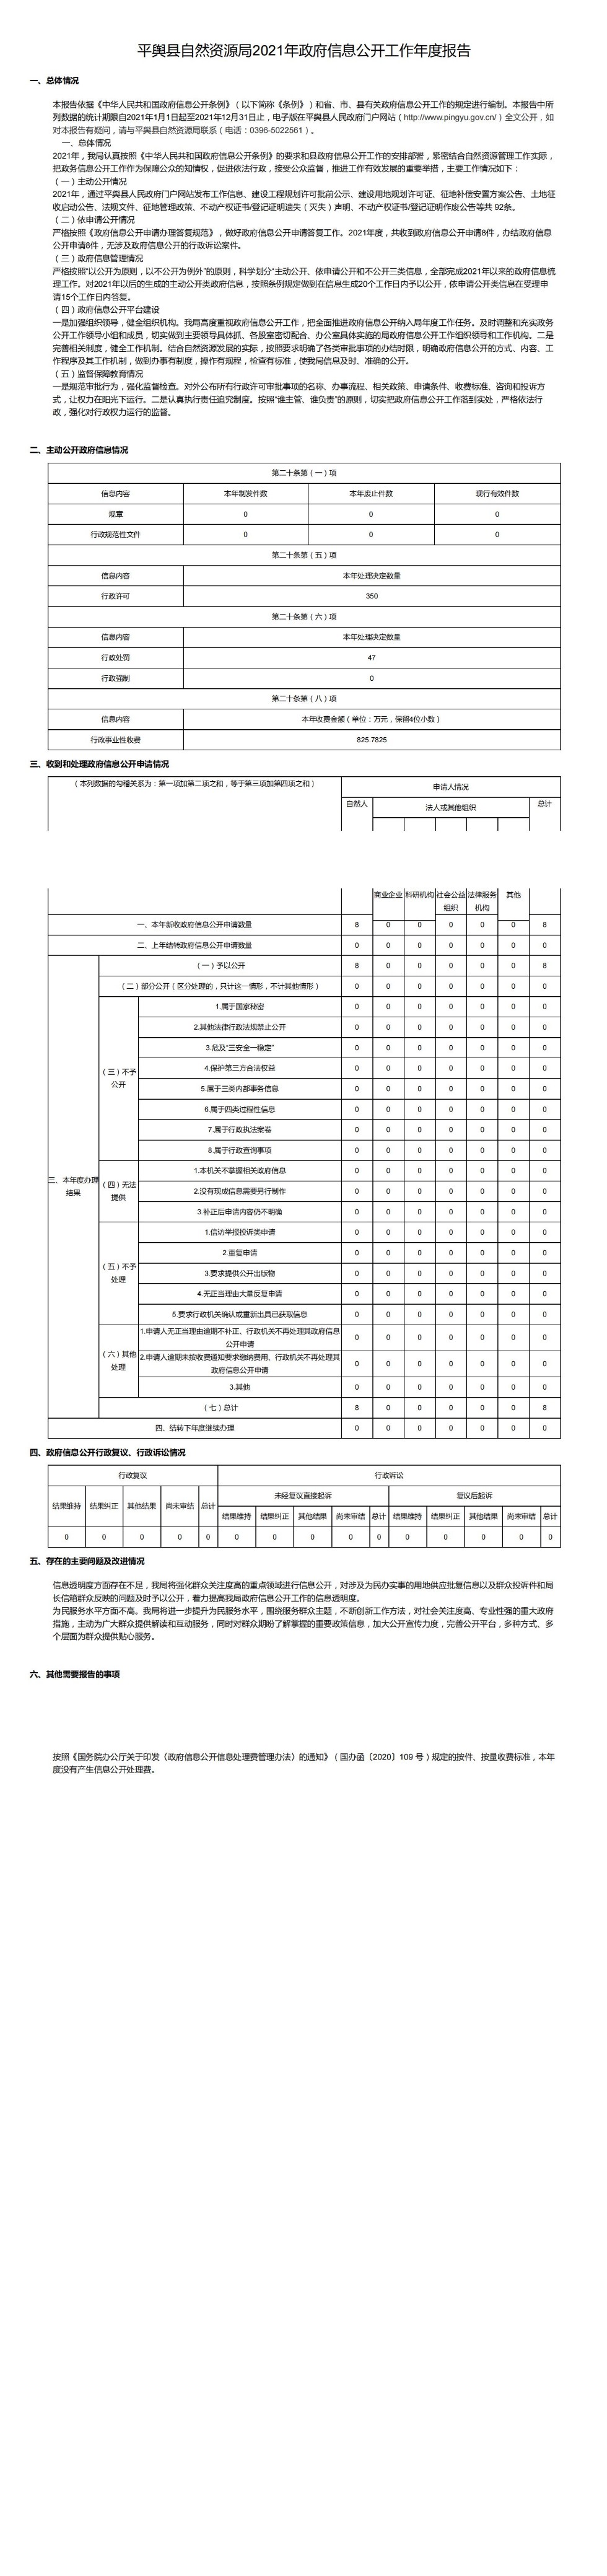 平舆县自然资源局2021年政府信息公开工作年度报告_00.jpg